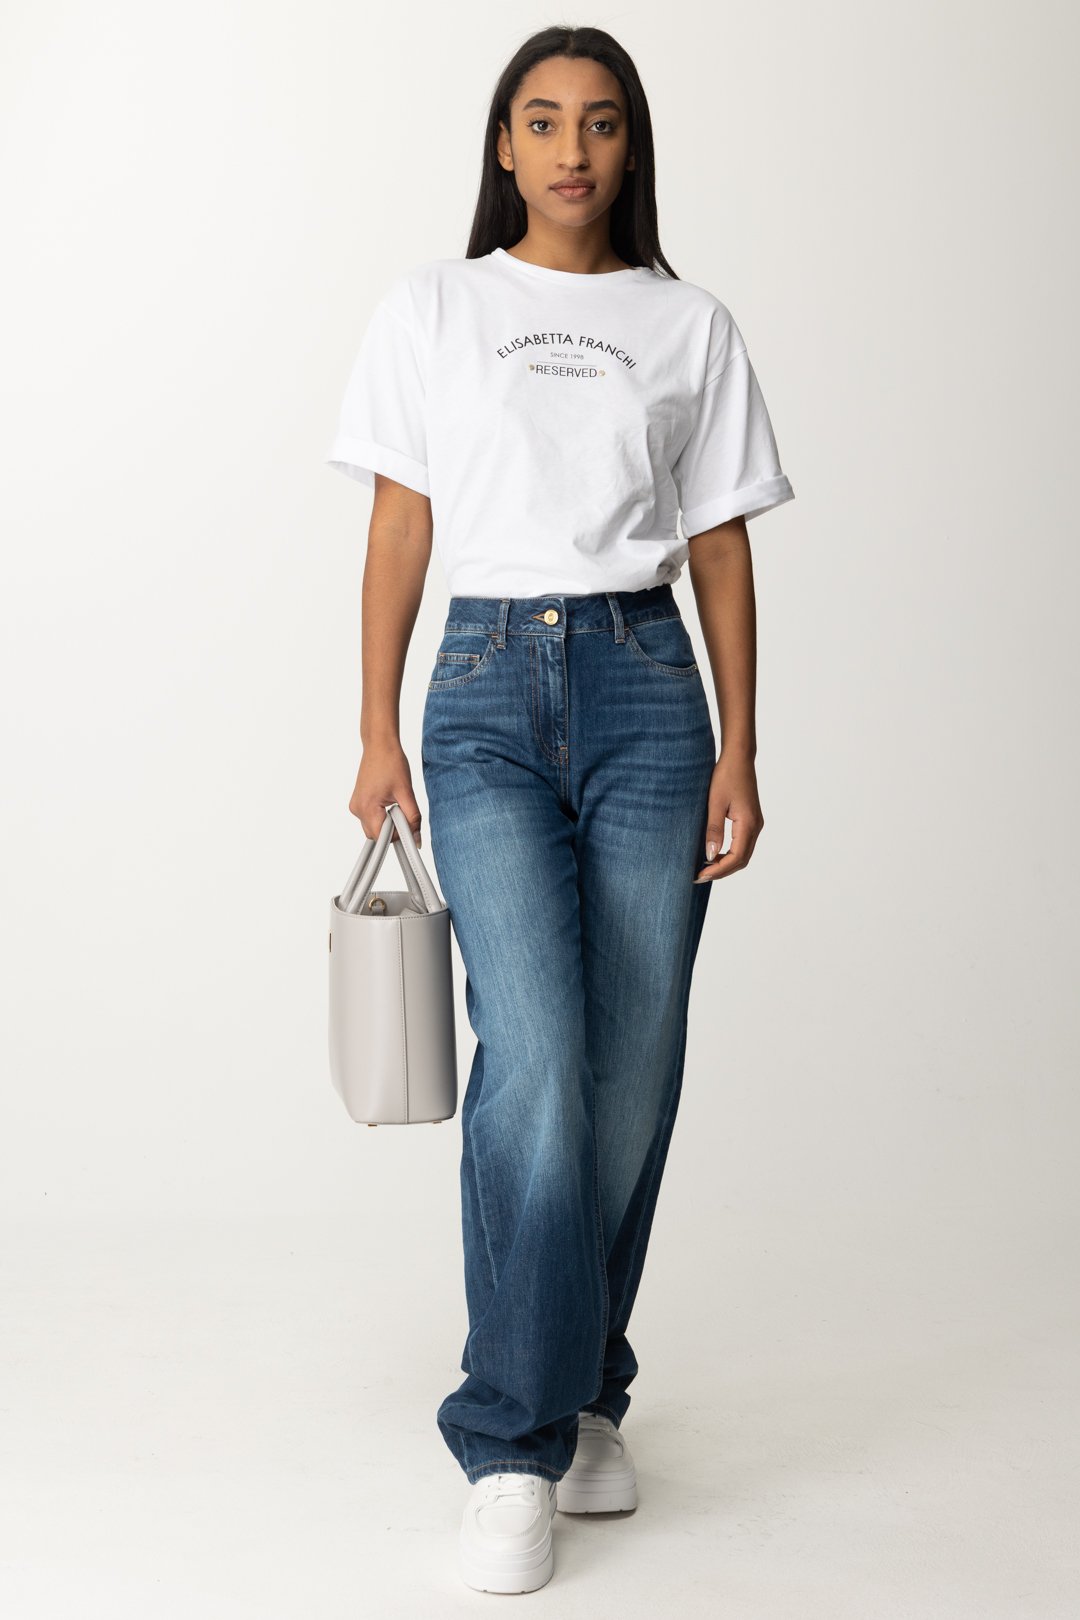 Vorschau: Elisabetta Franchi T-Shirt mit Reserved-Aufdruck Gesso